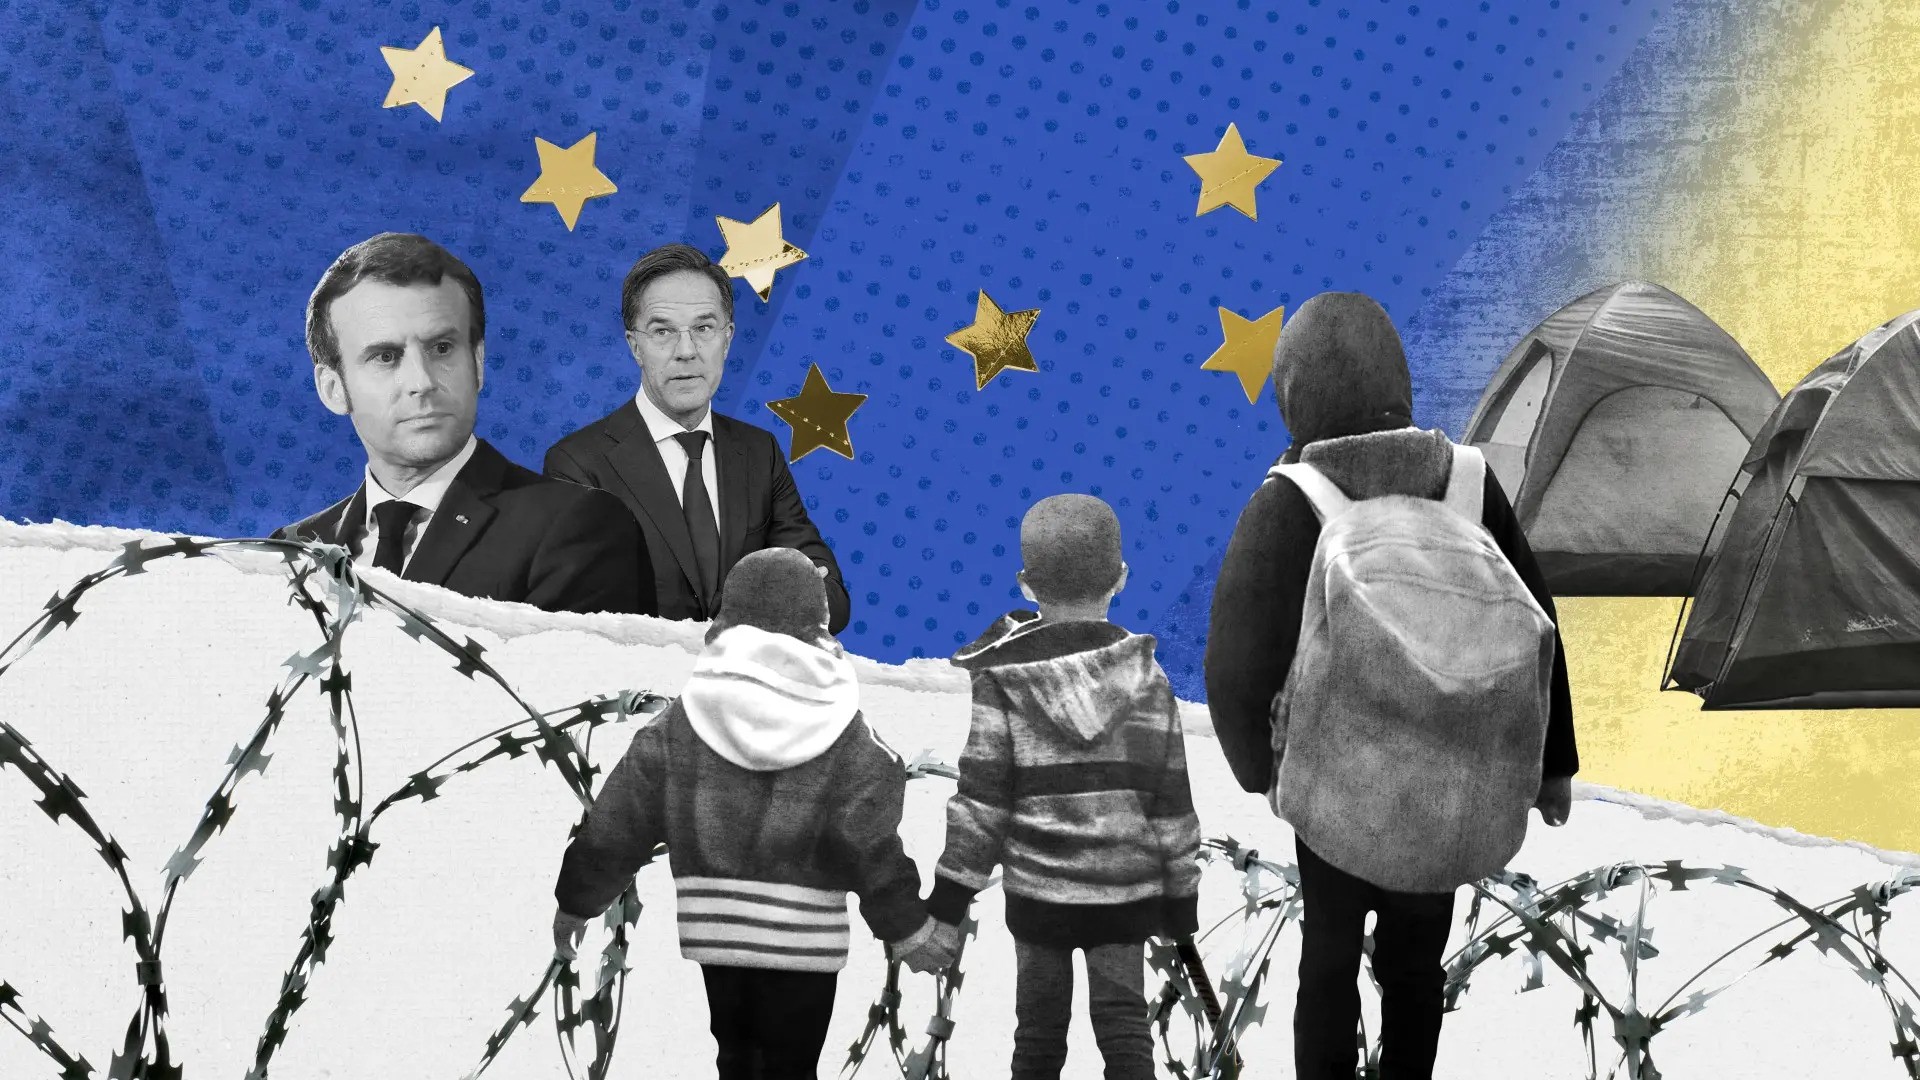 Immigratie in Europa: Frankrijk manoeuvreert om de detentie van kinderen vanaf zeer jonge leeftijd toe te staan